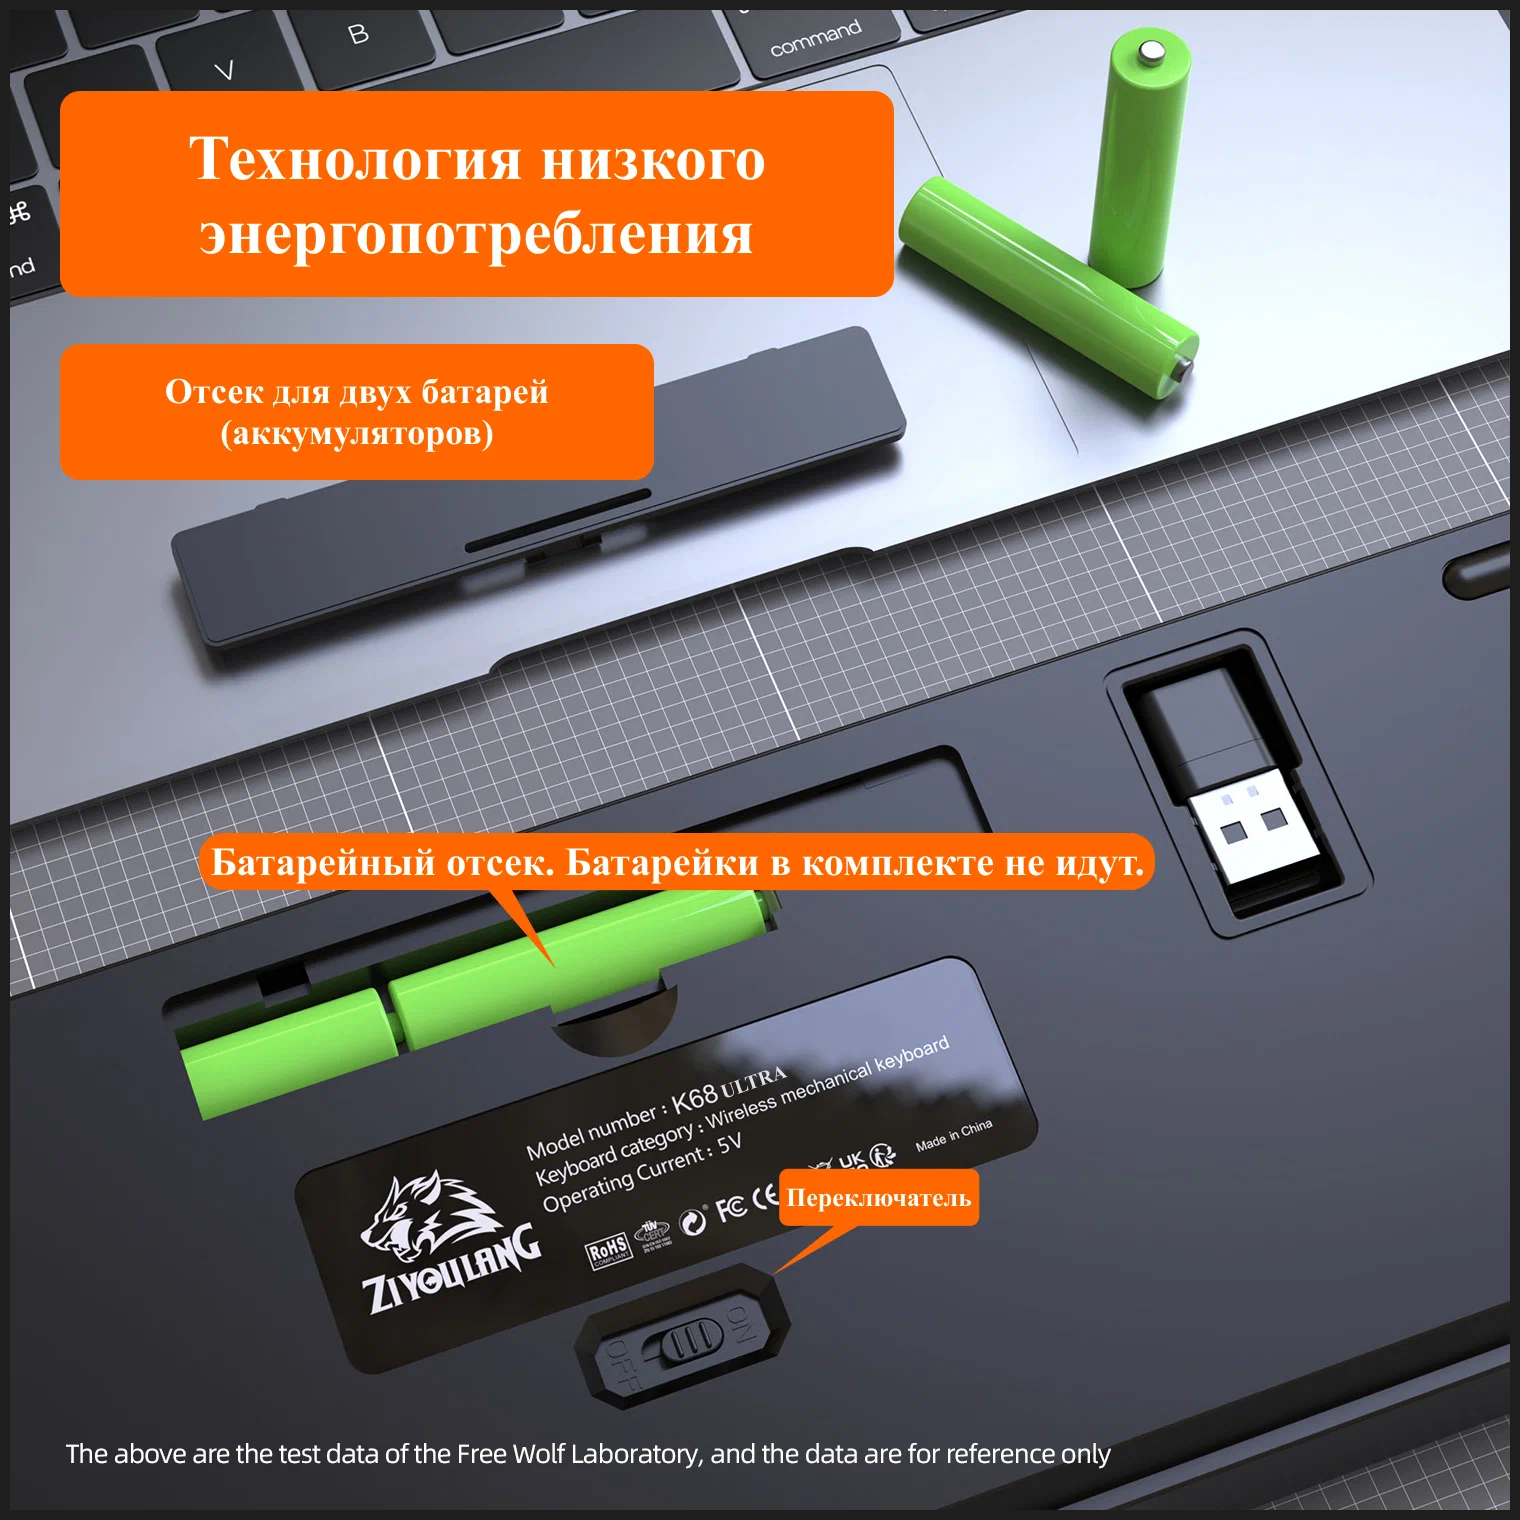 Клавиатура механическая беспроводная русская Verzu Free Wolf K68 Ultra Bluetooth+24G+Hot Swap игровая для компьютера ноутбука планшета